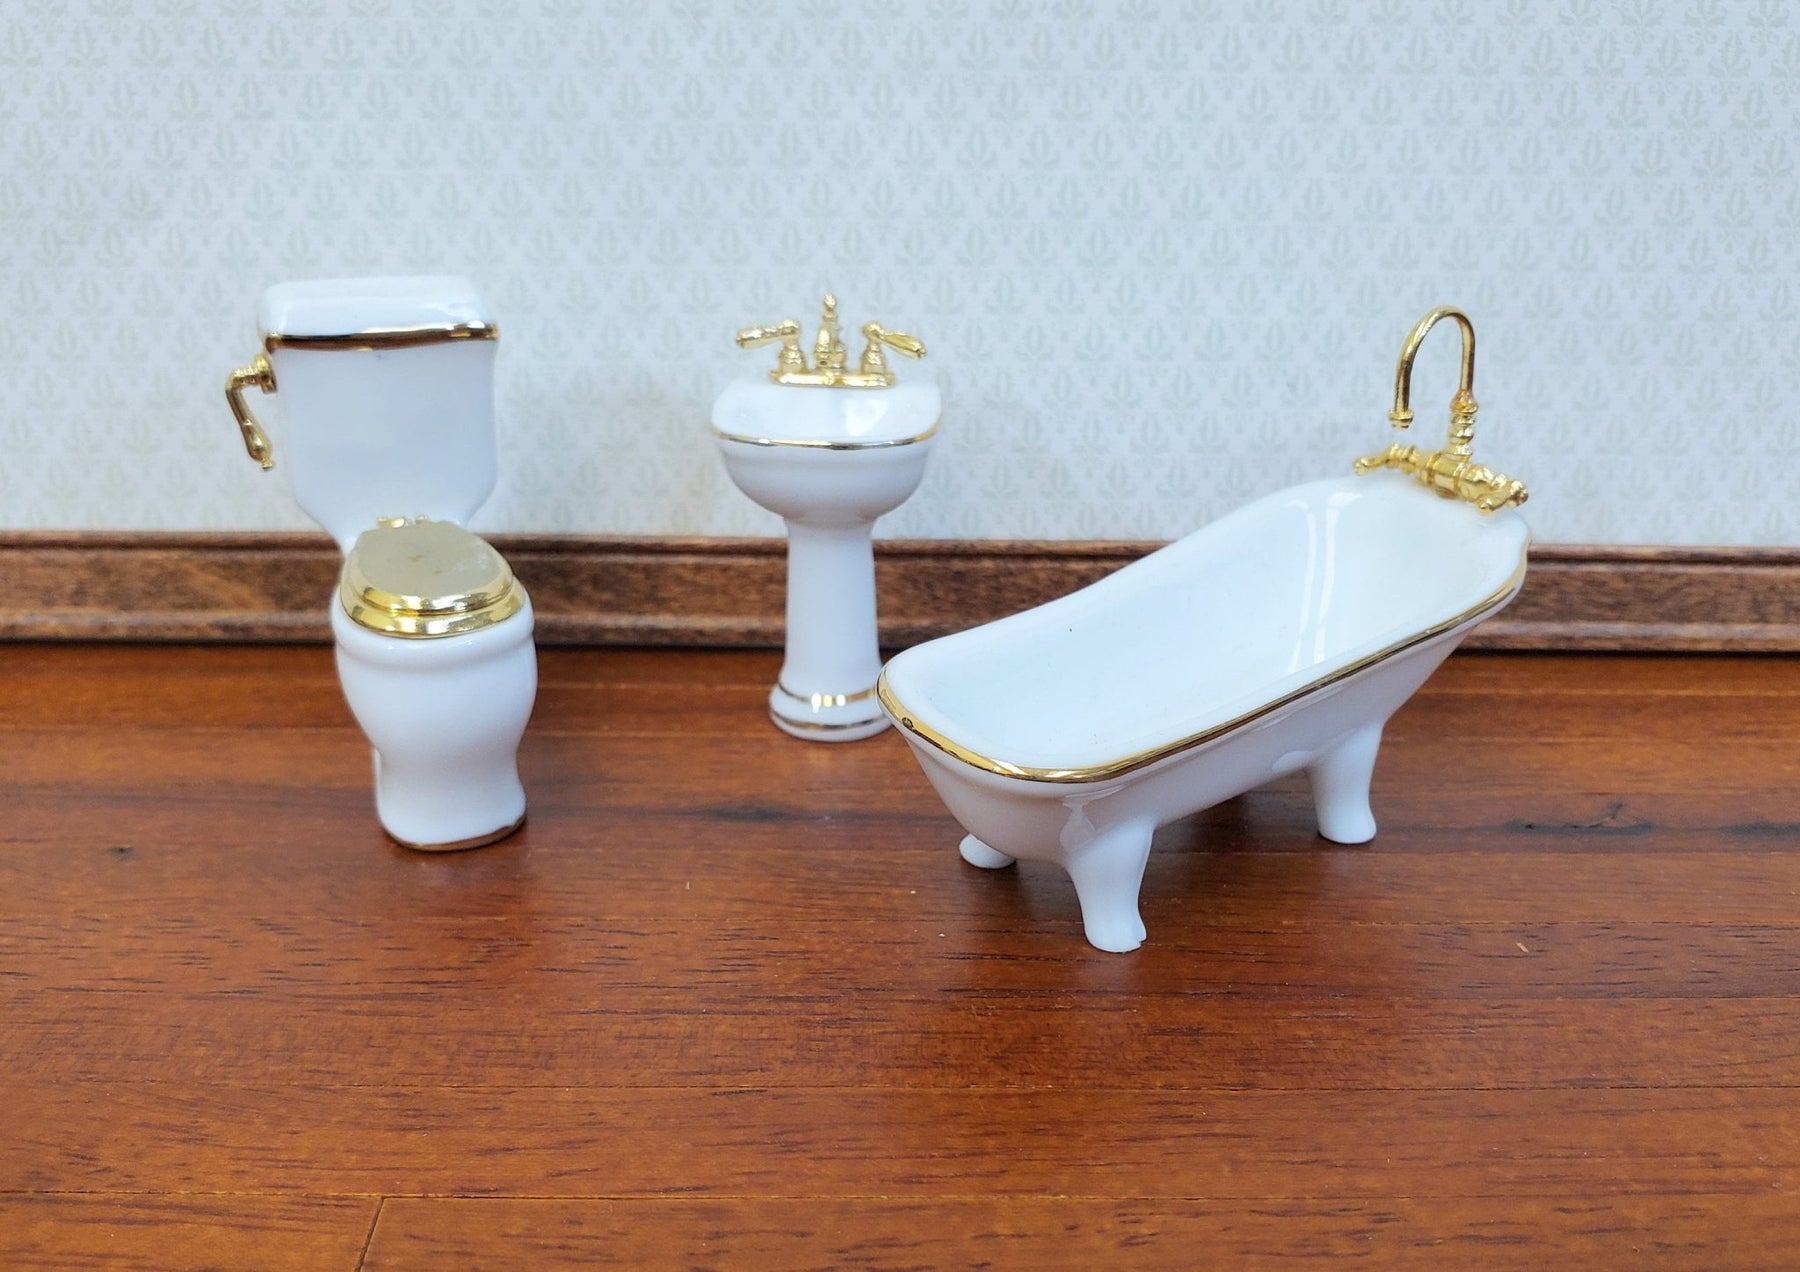 Dollhouse HALF SCALE Bathroom Set Reutter Porcelain Tub Toilet Sink 1:24  Miniatures 24k Gold Accents - Miniature Crush